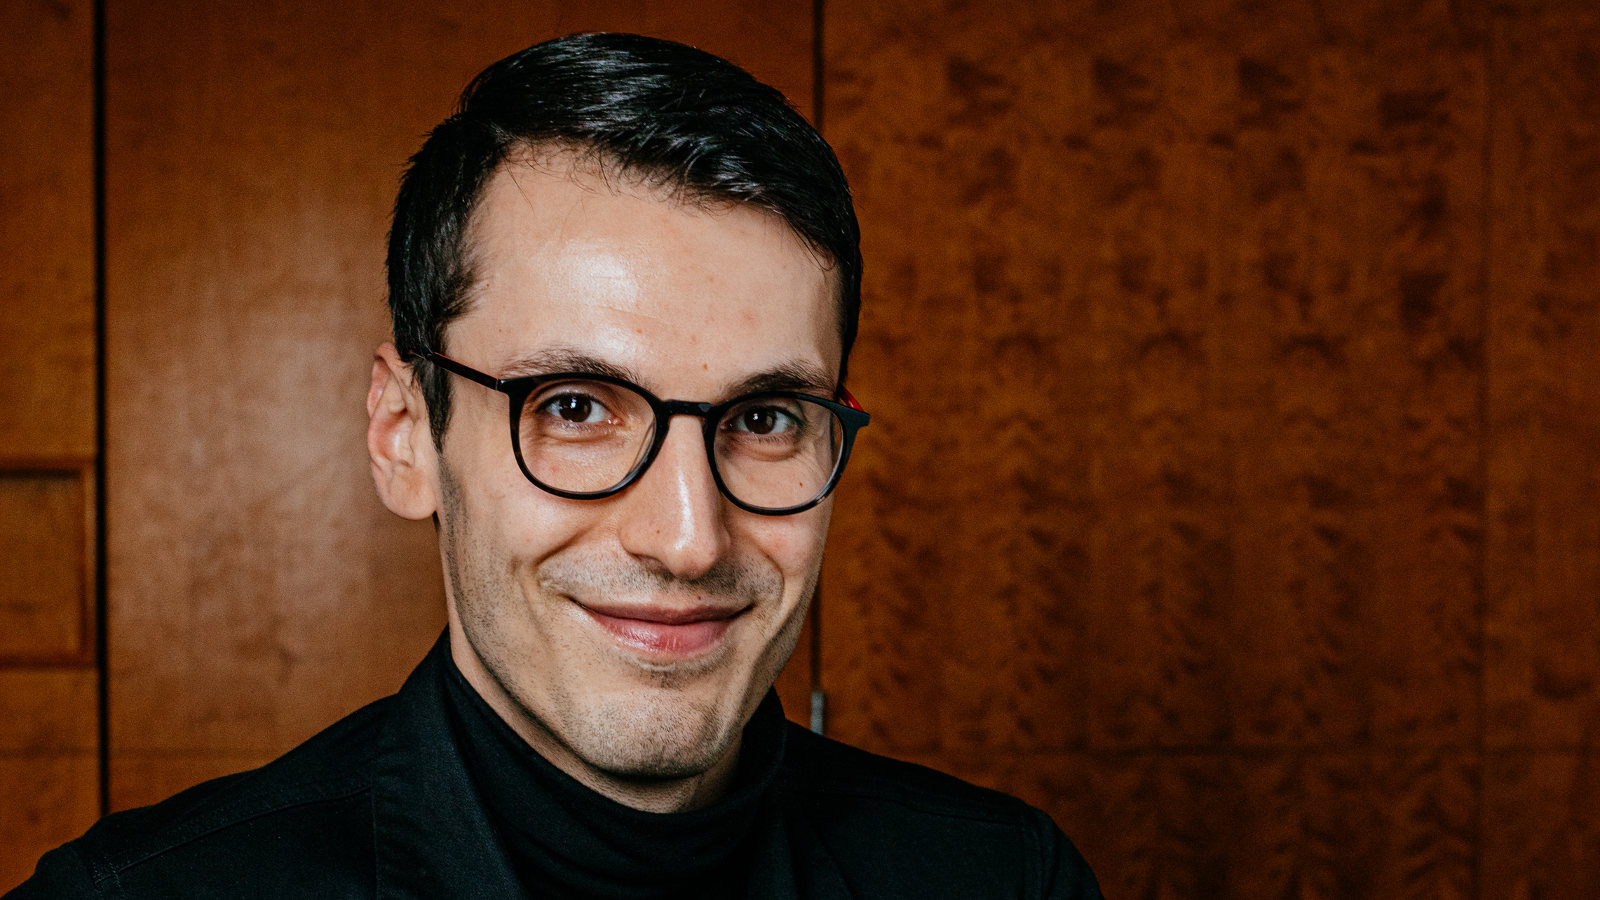 Kuvassa on kanunokirjallisuuden Finlandia-palkinnon voittanut Pajtim Statovci.  Hänellä  on silmälasit ja tummat hiukset.